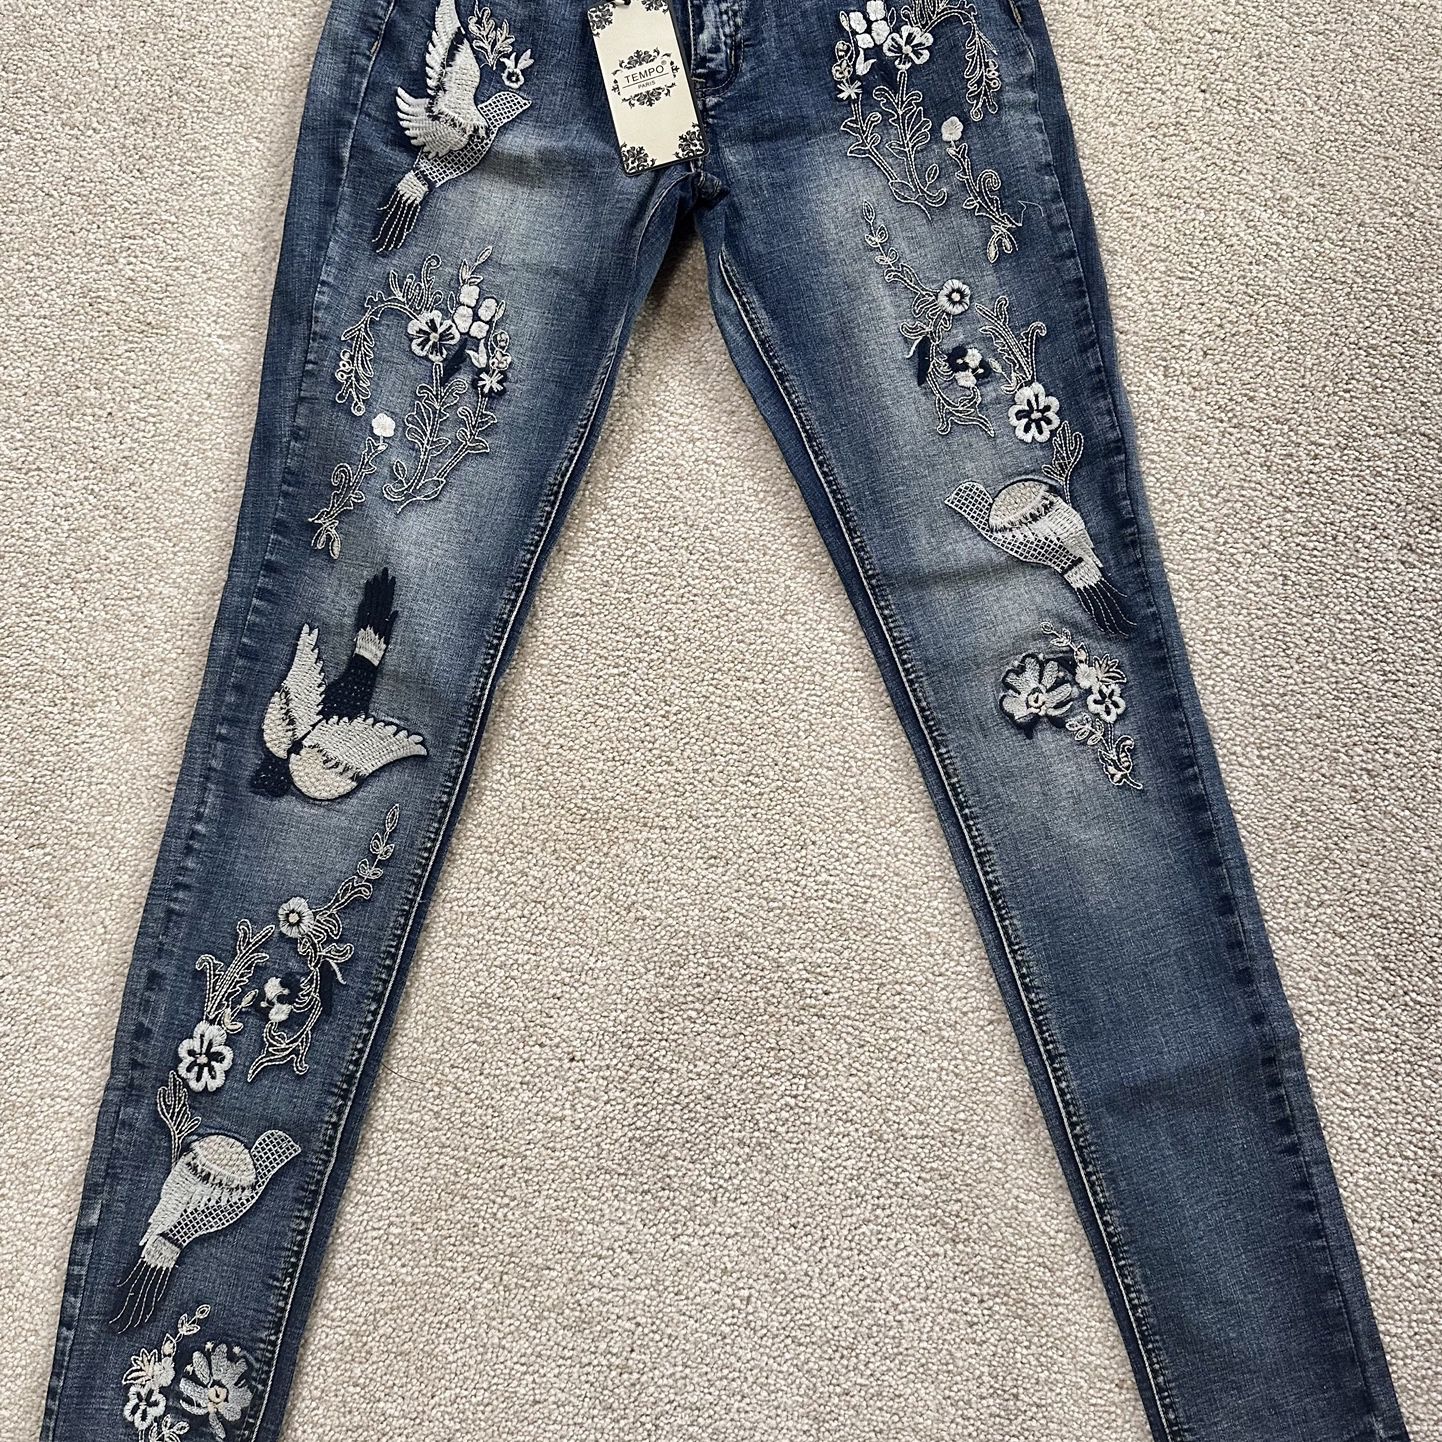 New Women’s Jeans - Wholesale Lot